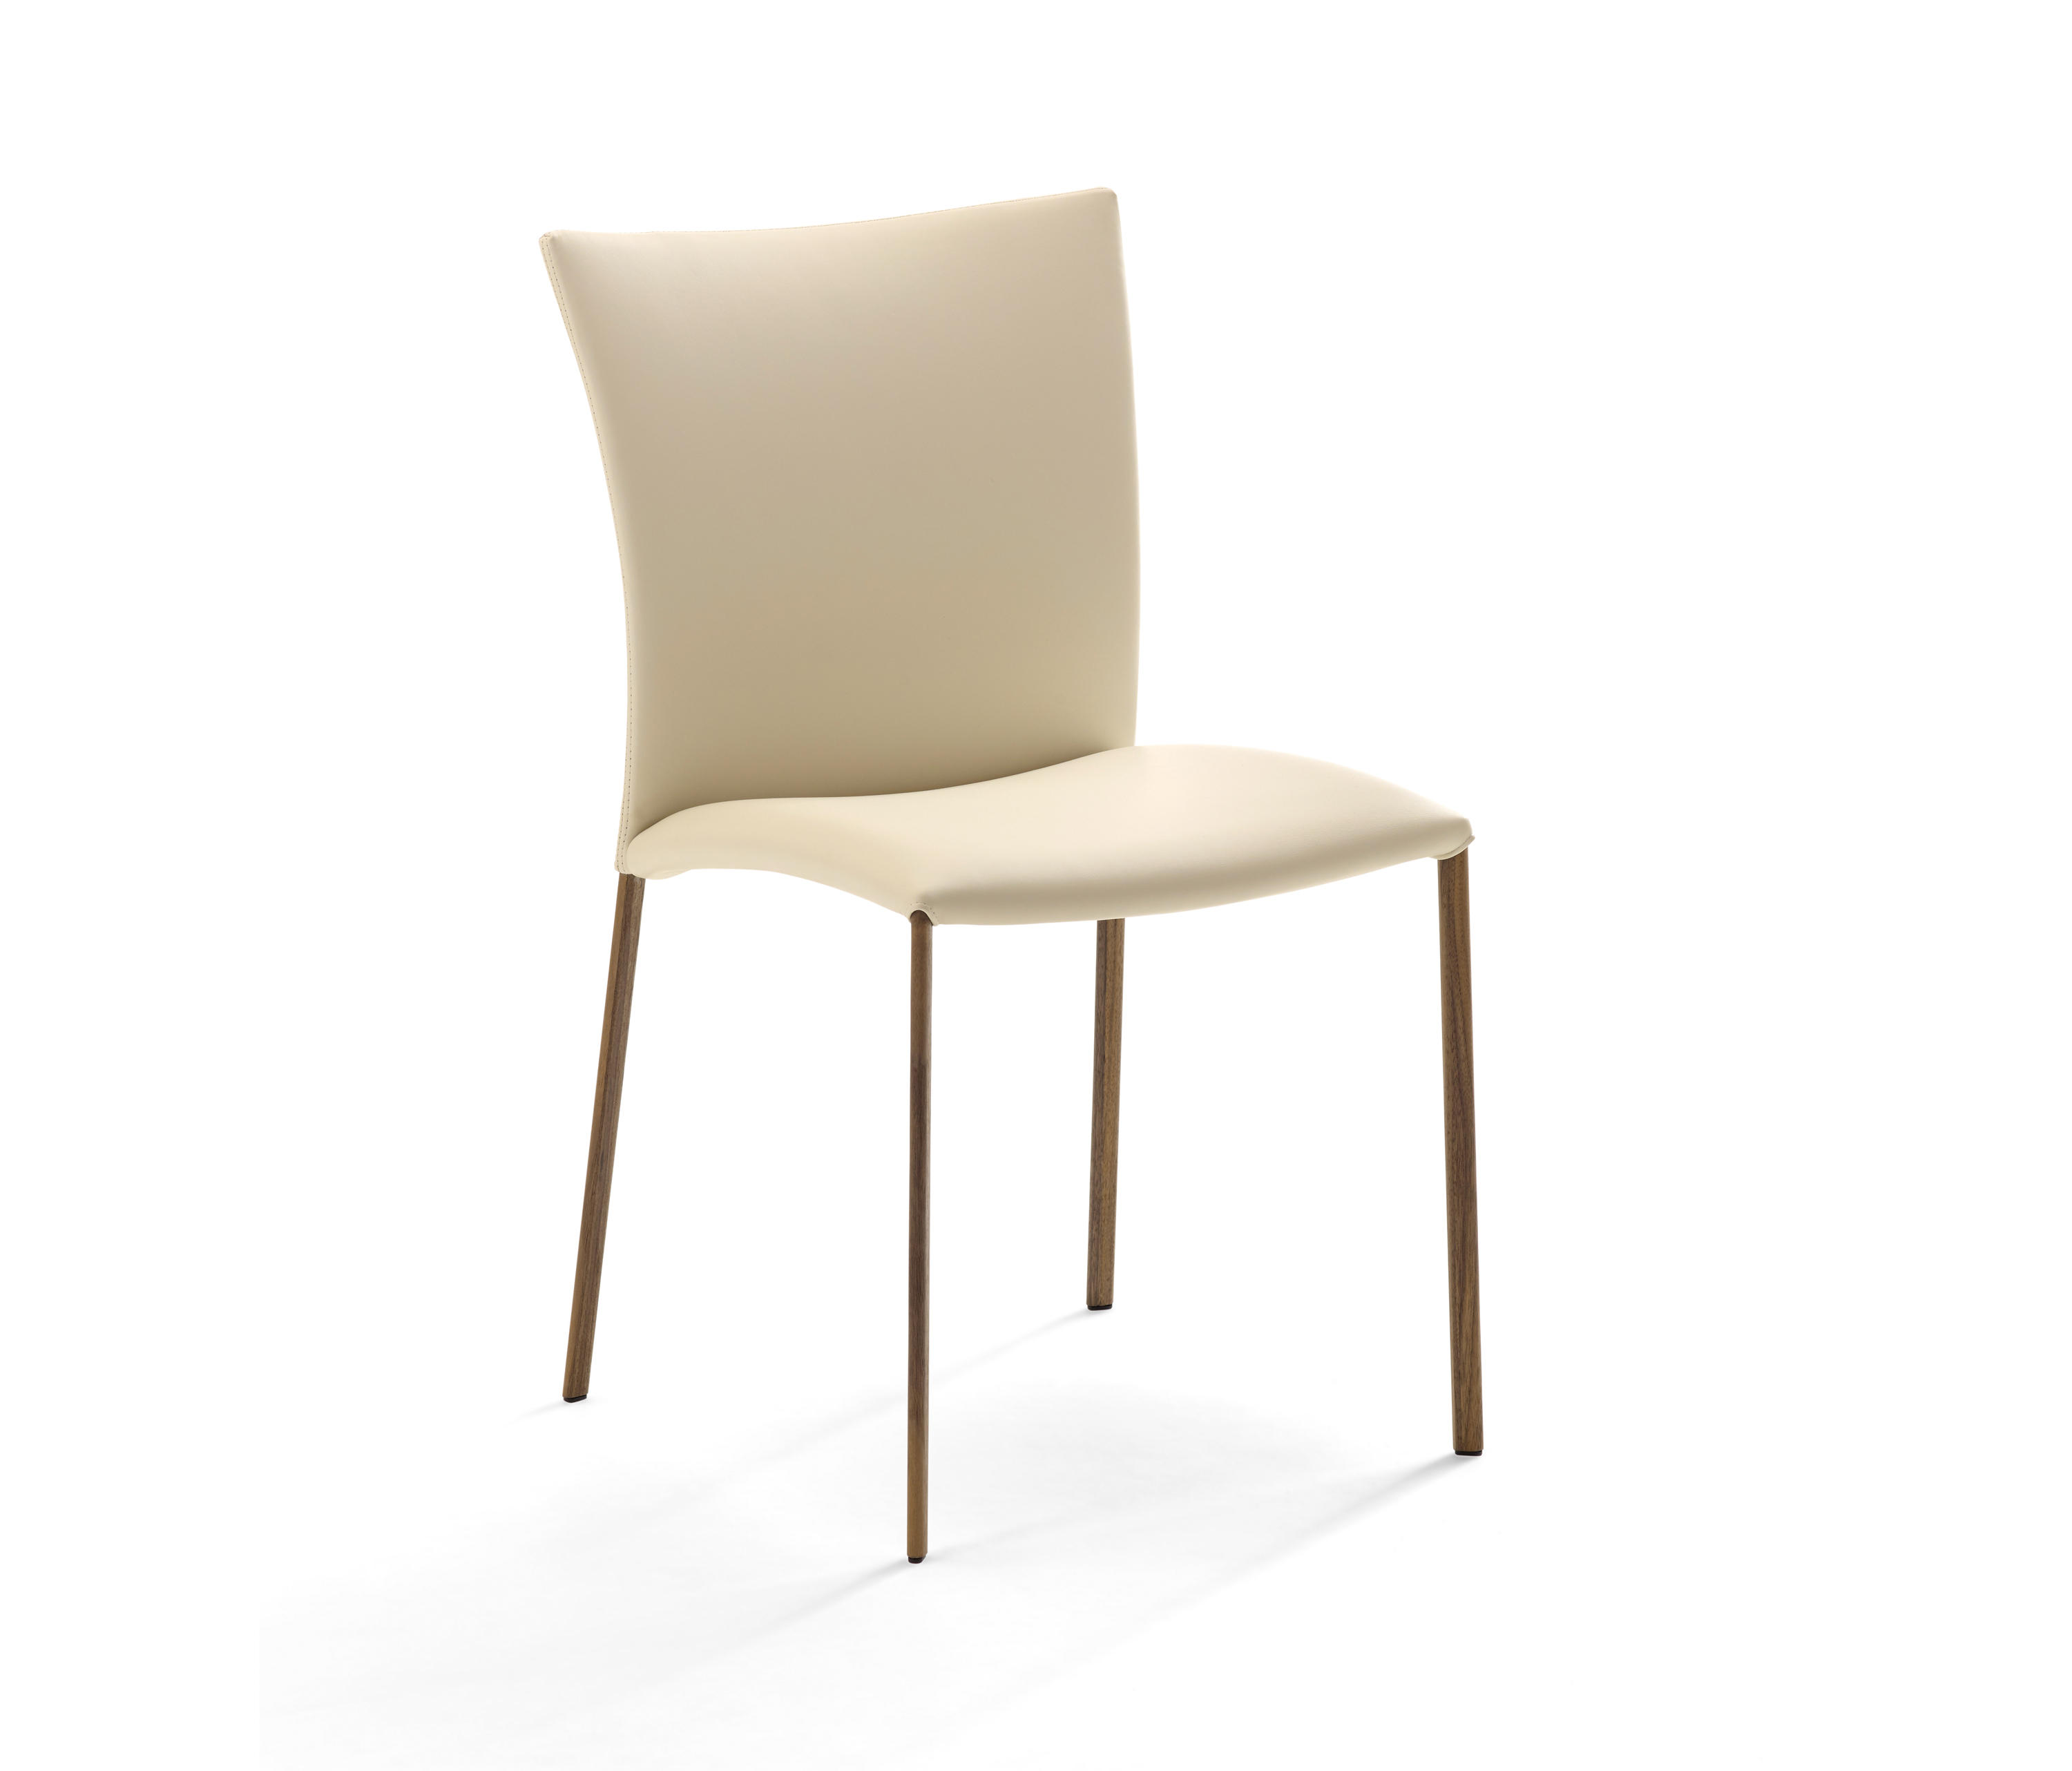 NOBILE Soft Chair by Draenert